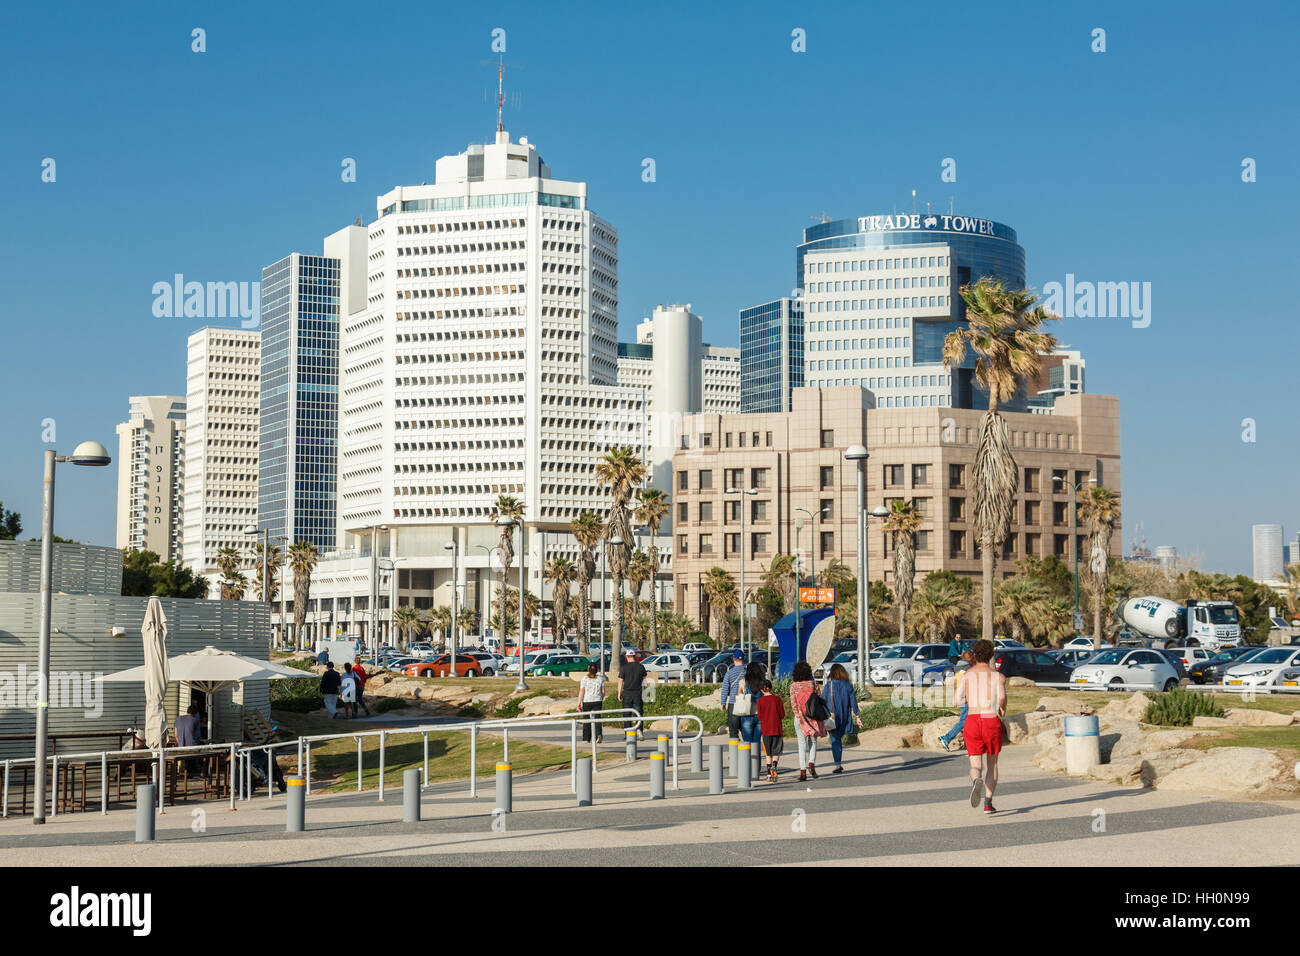 TEL AVIV, ISRAËL - 4 Avril 2016 : Les gens de la marche et de la course sur une promenade en bord de mer à TelAviv, Israël sur le 4 avril 2016 Banque D'Images